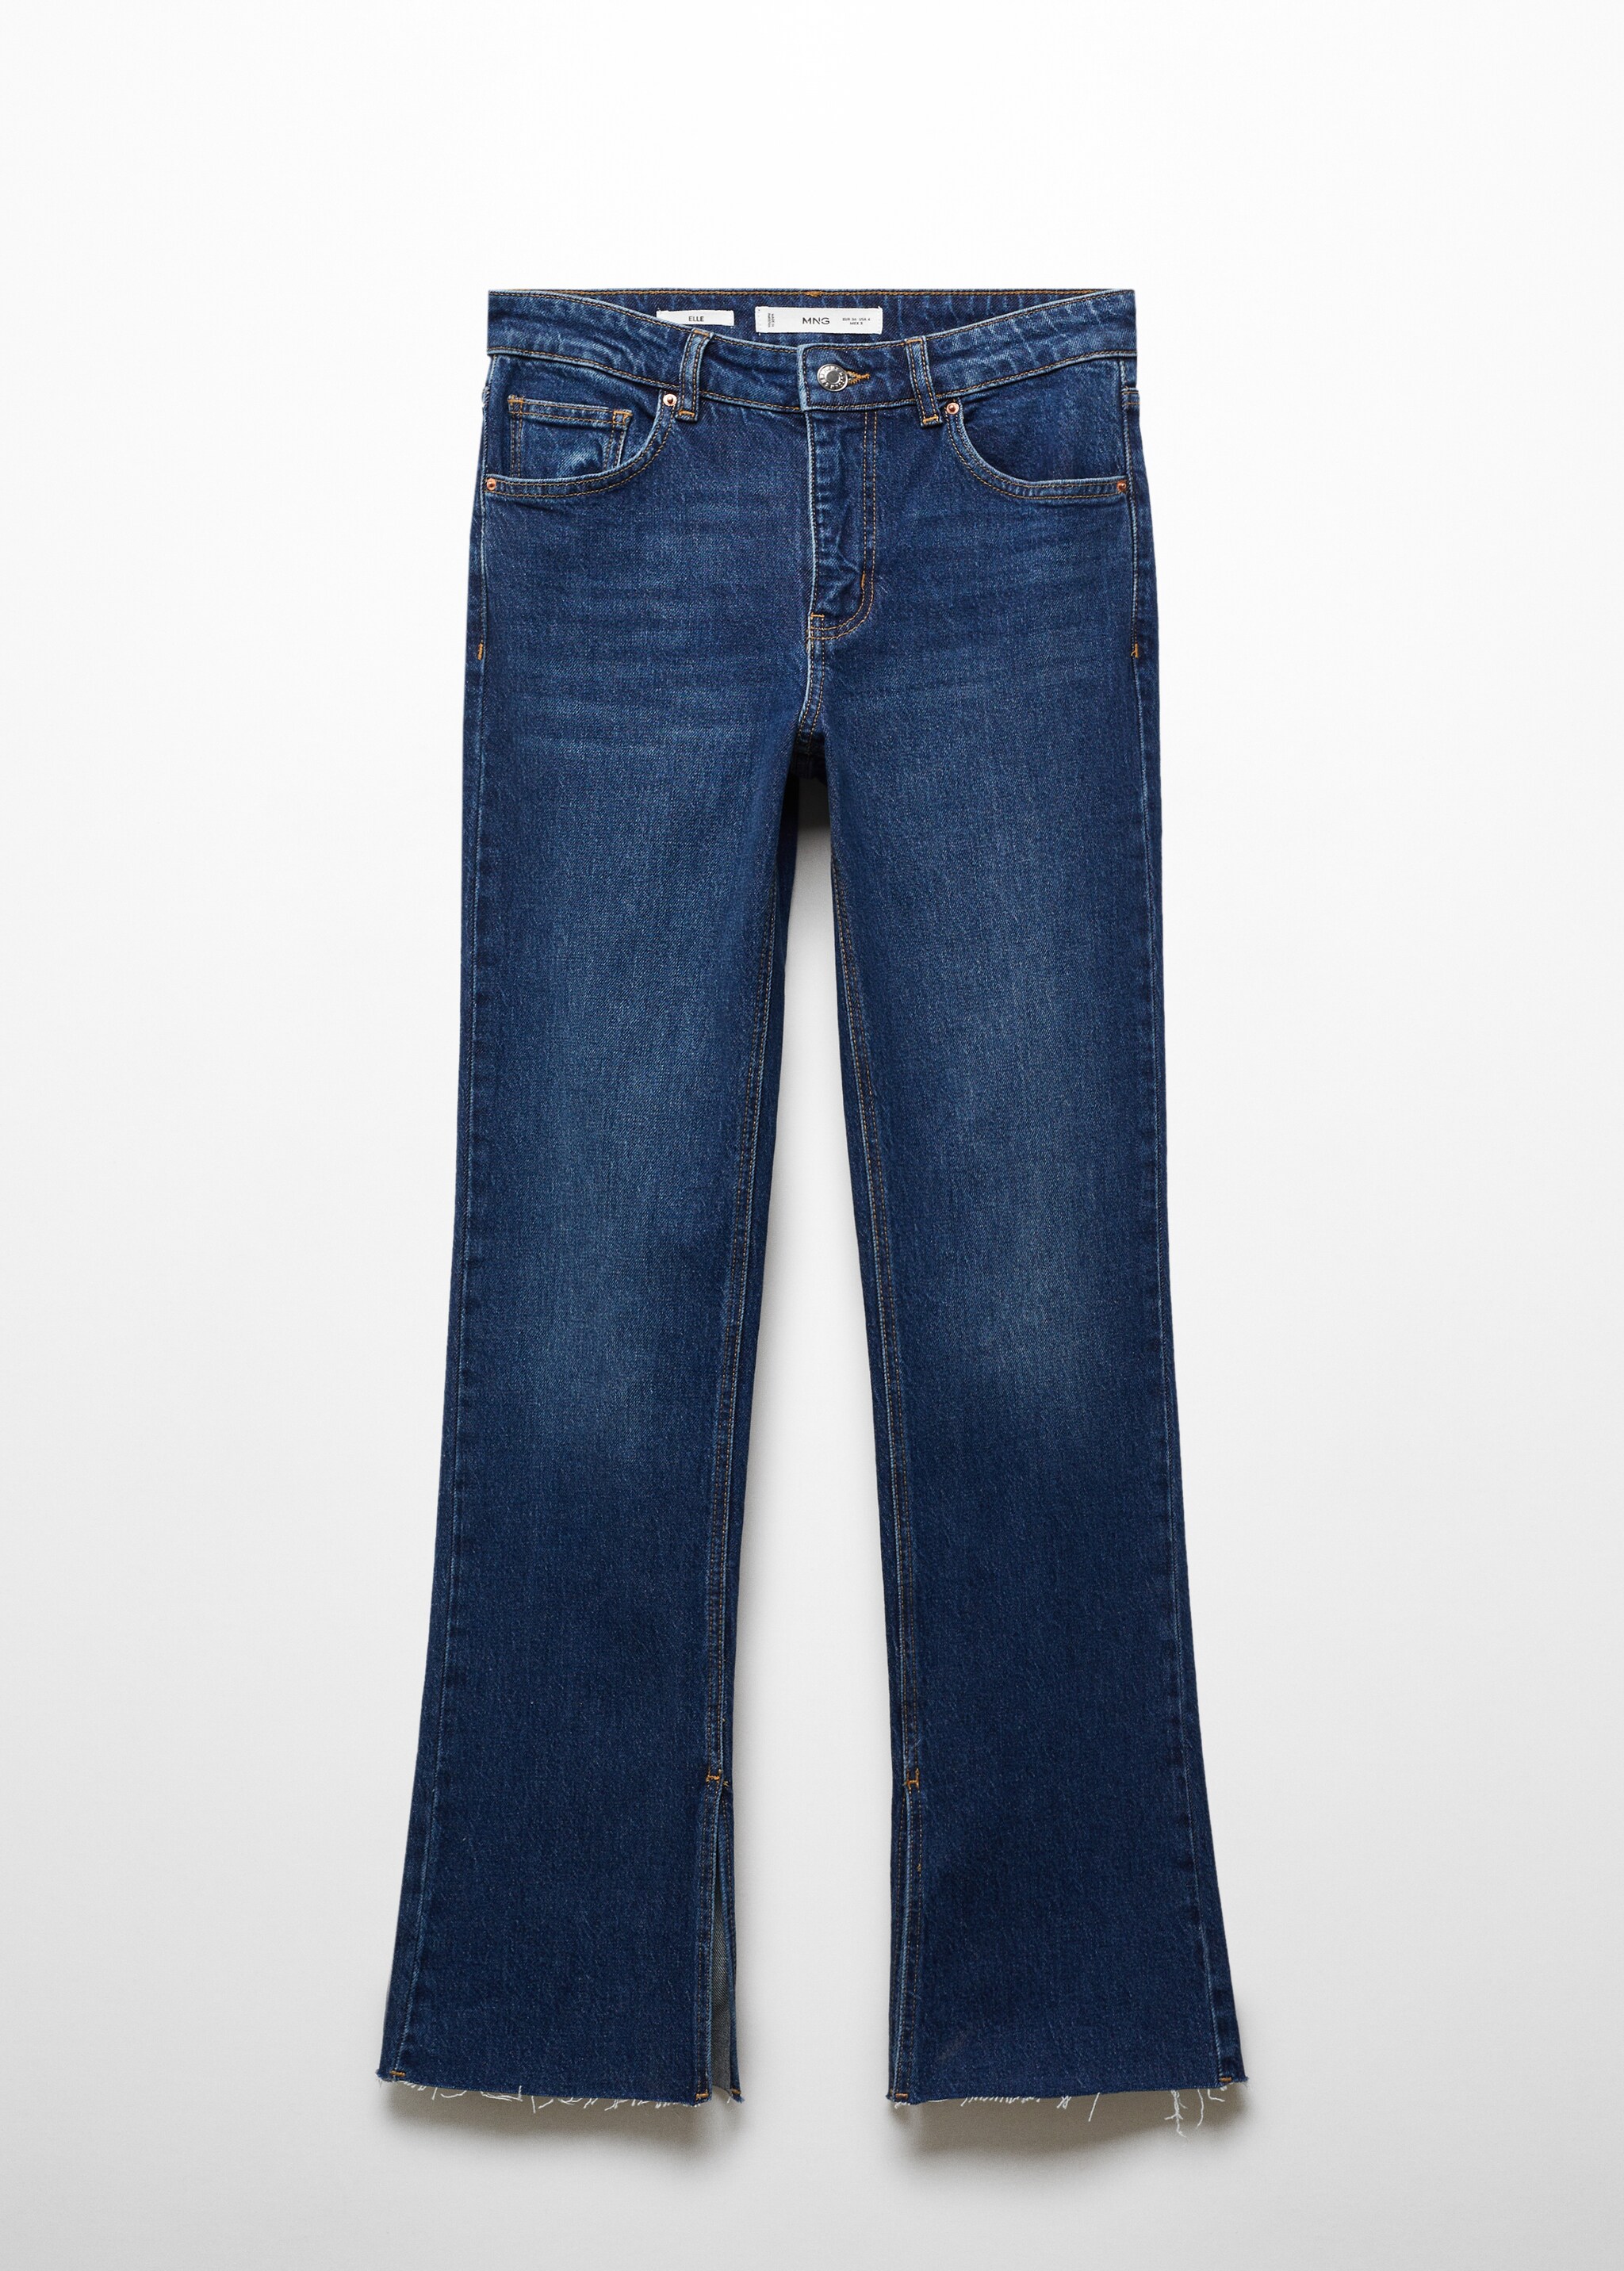 Прямые джинсы с посадкой на талии и разрезами - Изделие без модели